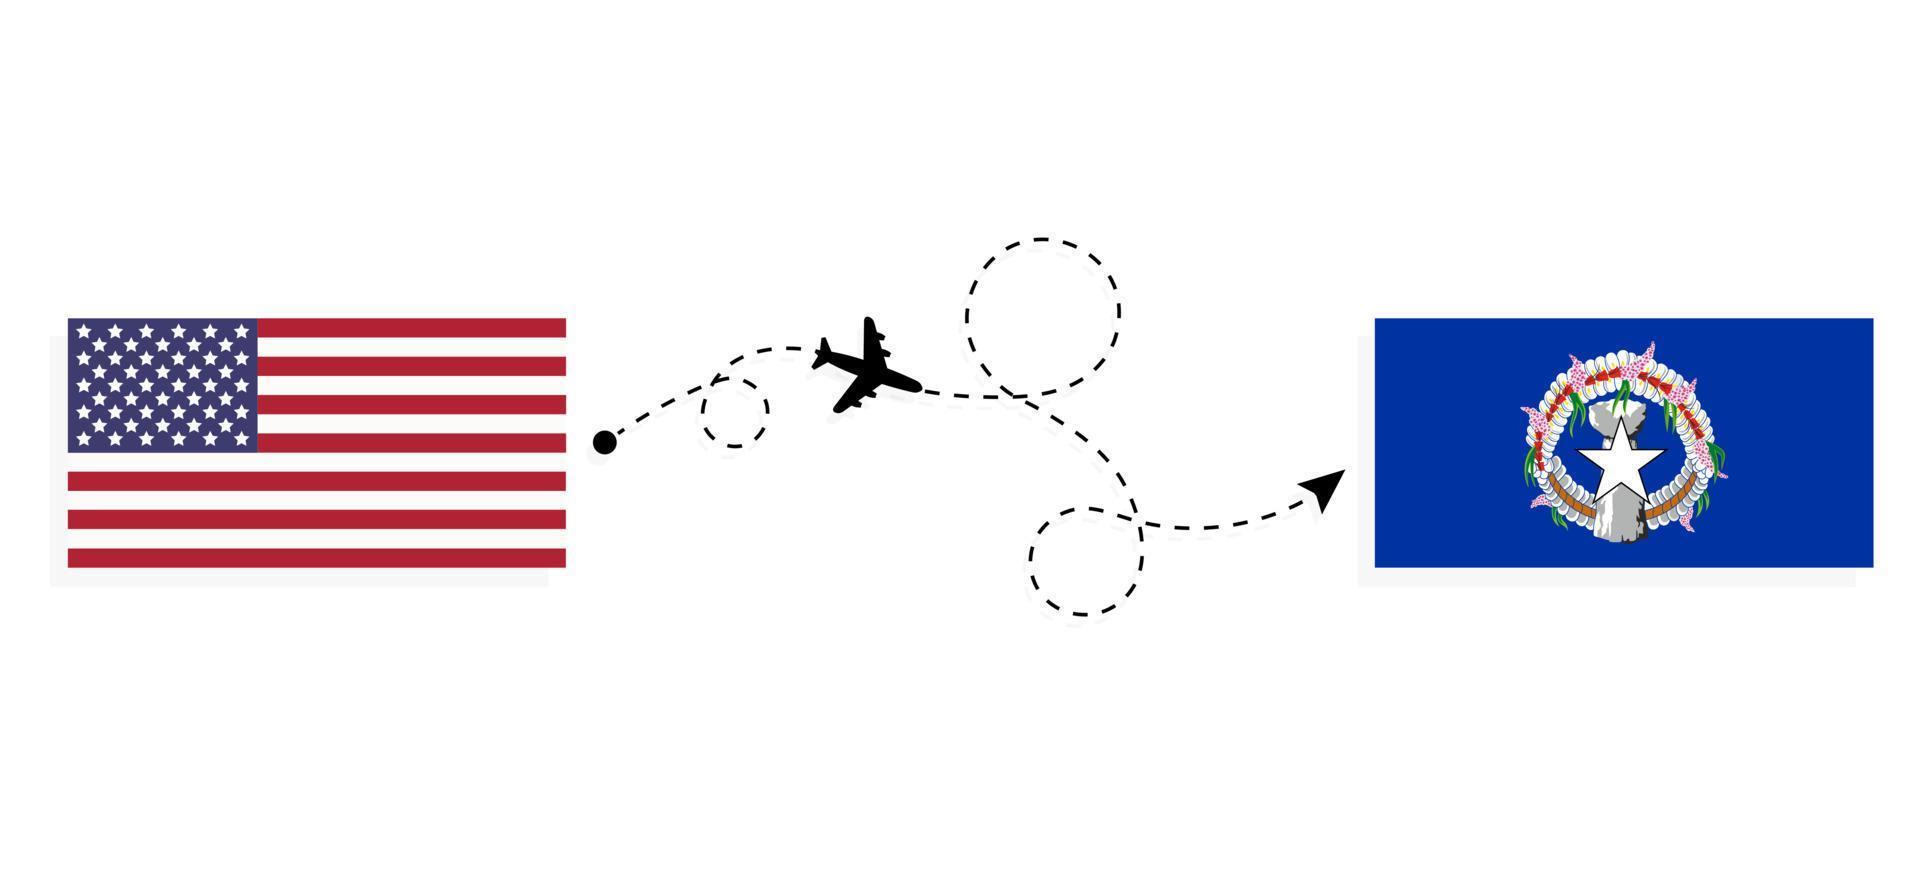 vol et voyage des états-unis aux îles mariannes du nord par concept de voyage en avion de passagers vecteur